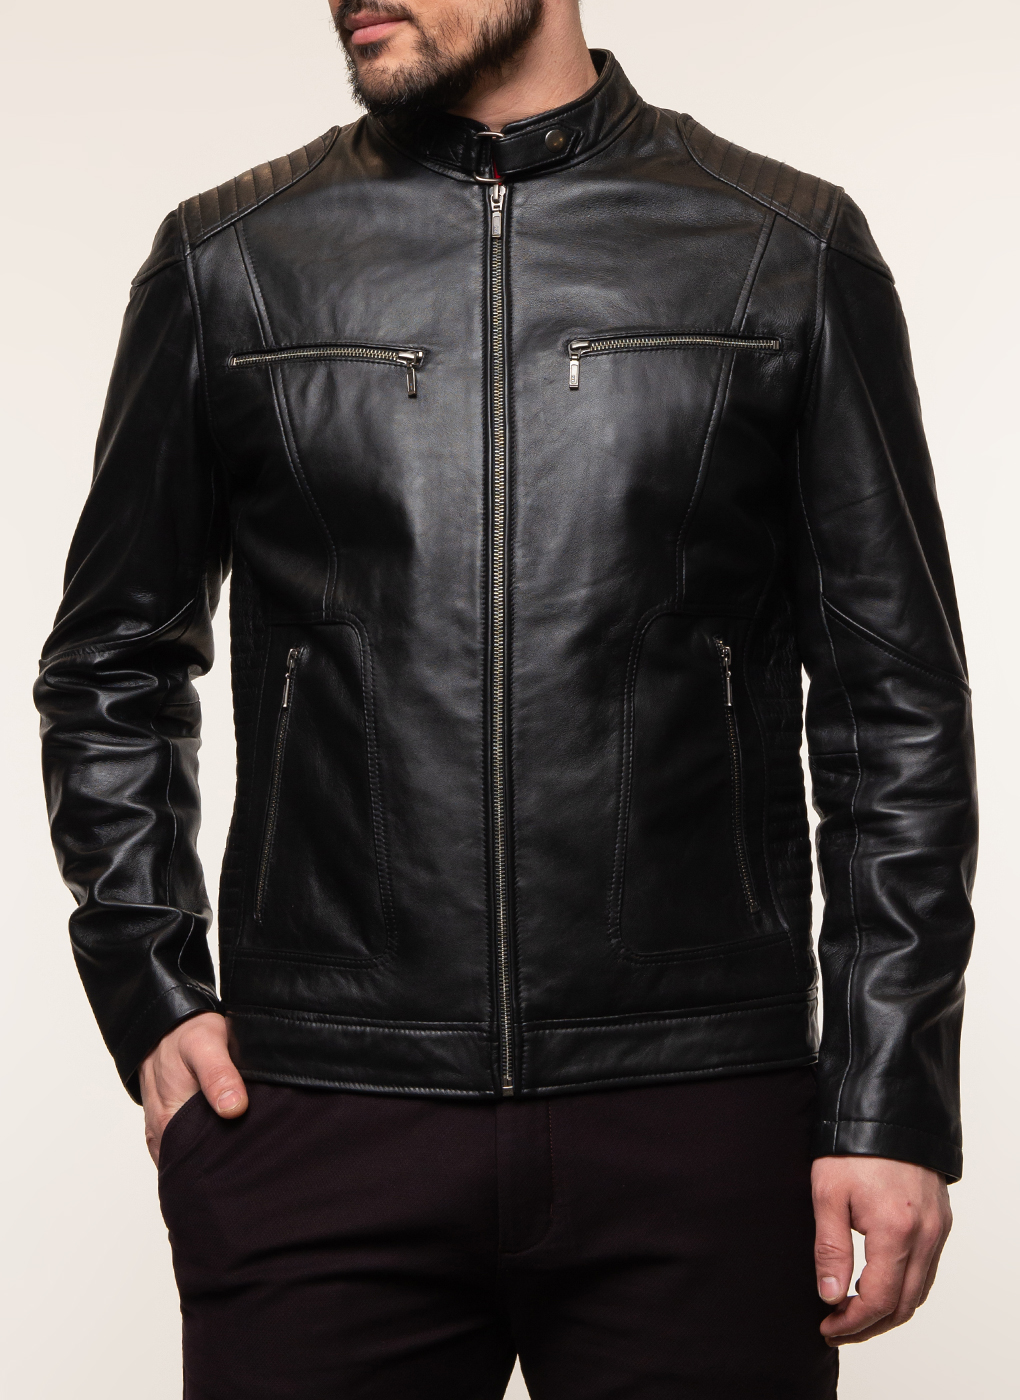 Кожаная куртка мужская Каляев 62648 черная 52 RU